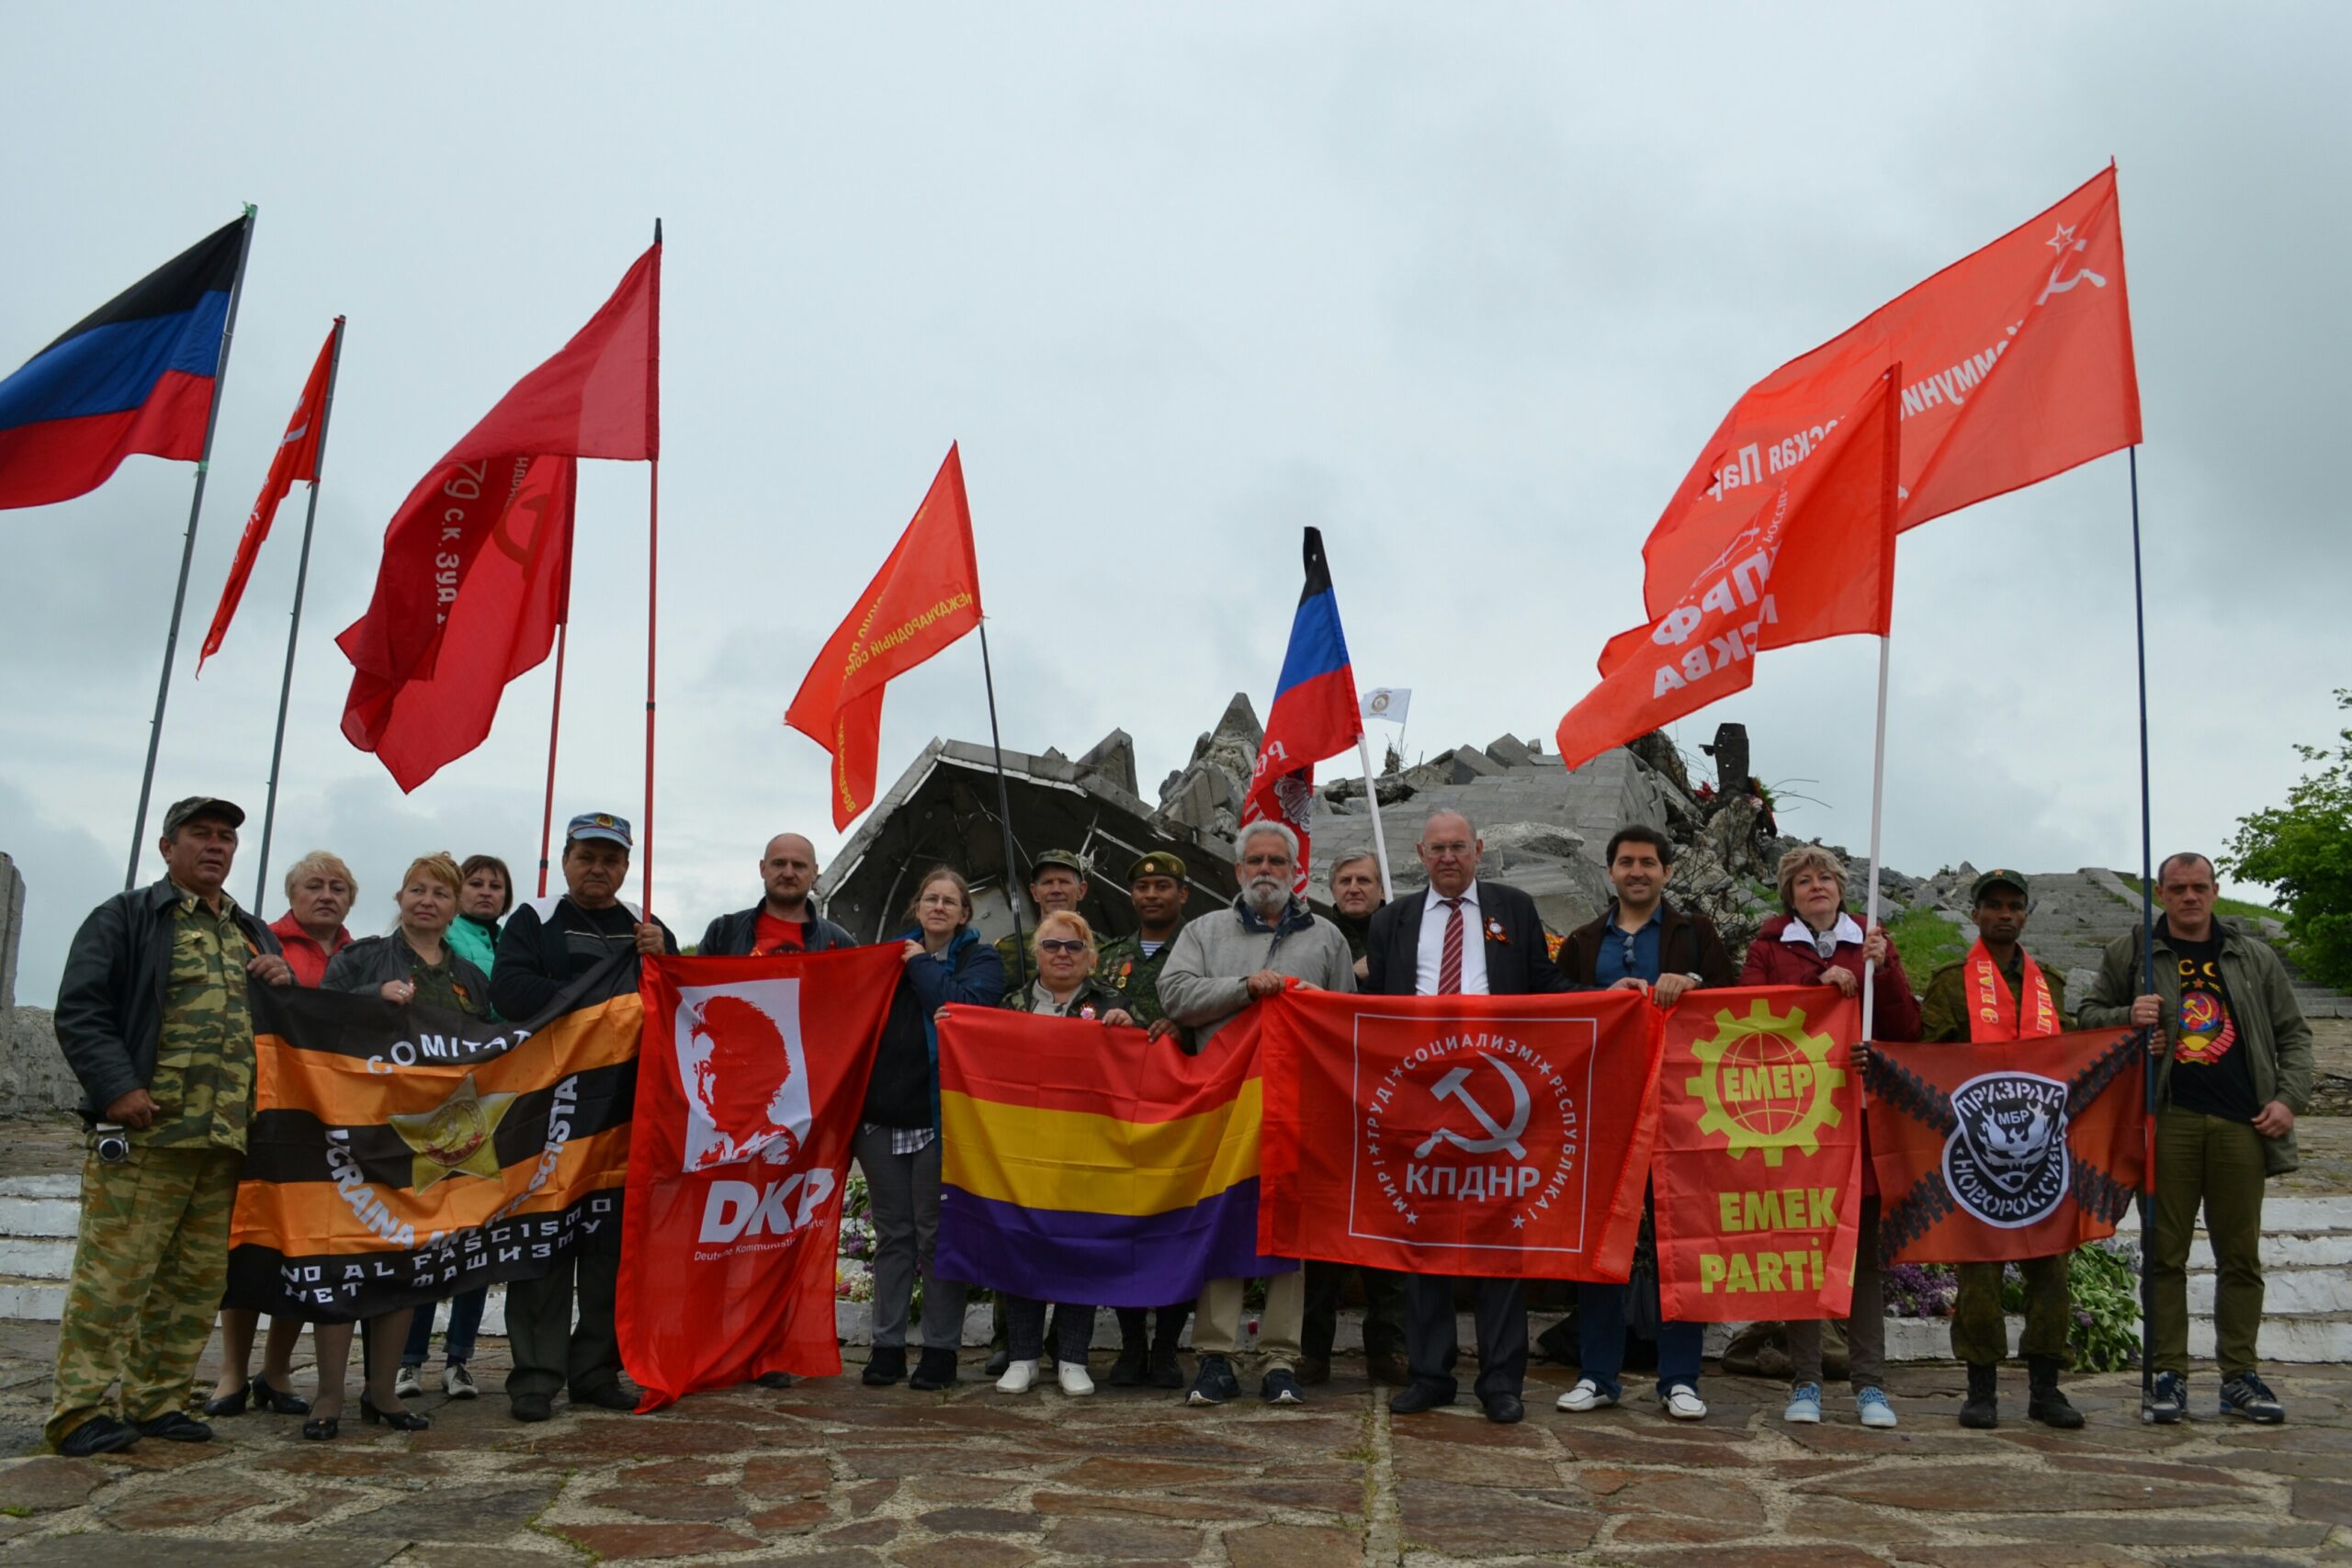 IMG 20190511 141158 scaled - Resolution des Internationalen Antifaschistischen Forums am 8. Mai in Donezk - Donezk, Friedenskampf - Blog, Weltkommunismus